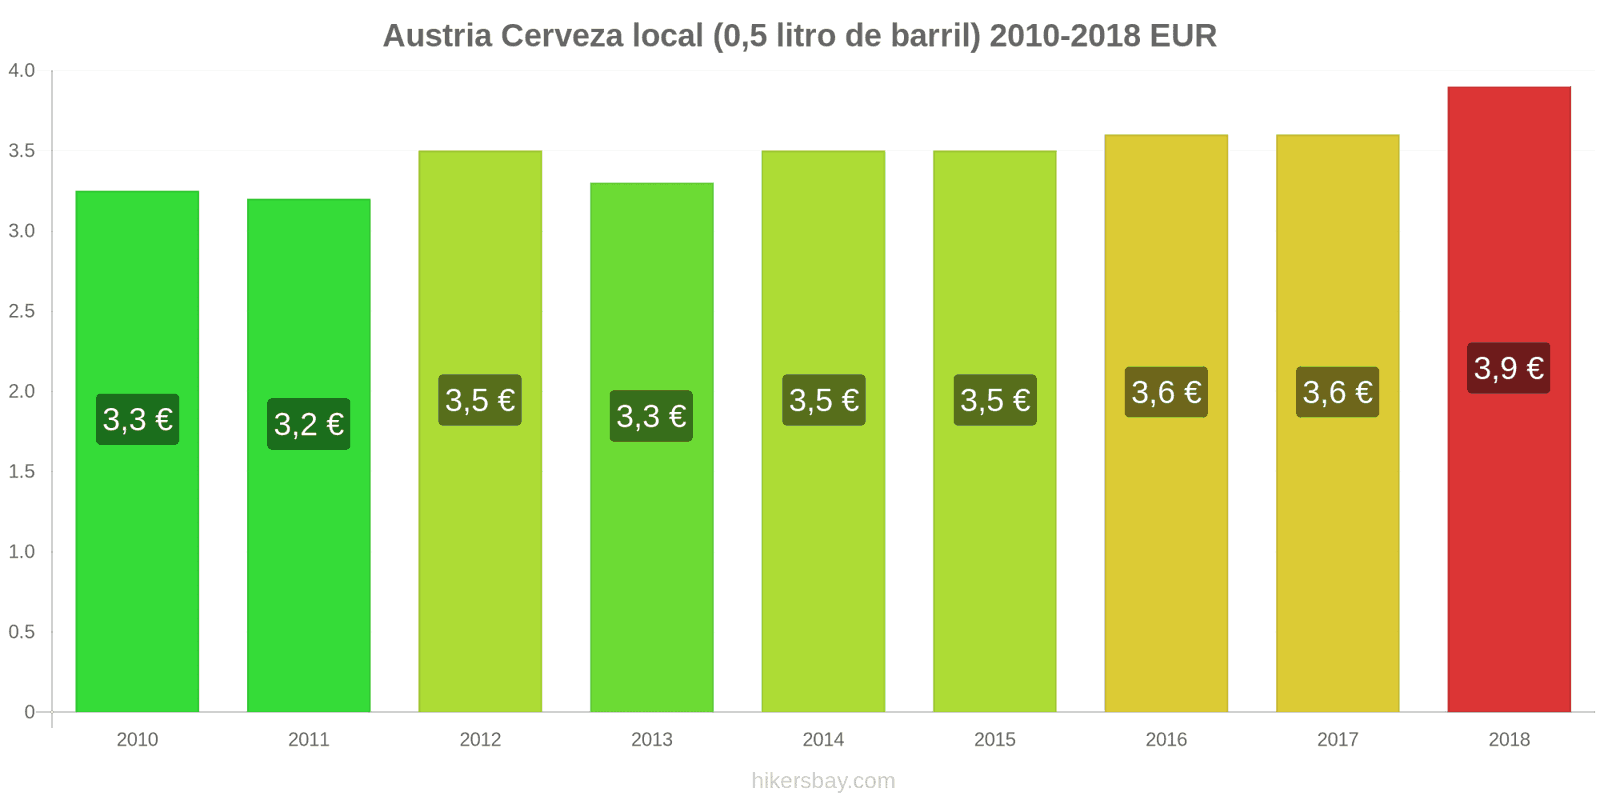 Austria cambios de precios Cerveza de barril (0,5 litros) hikersbay.com